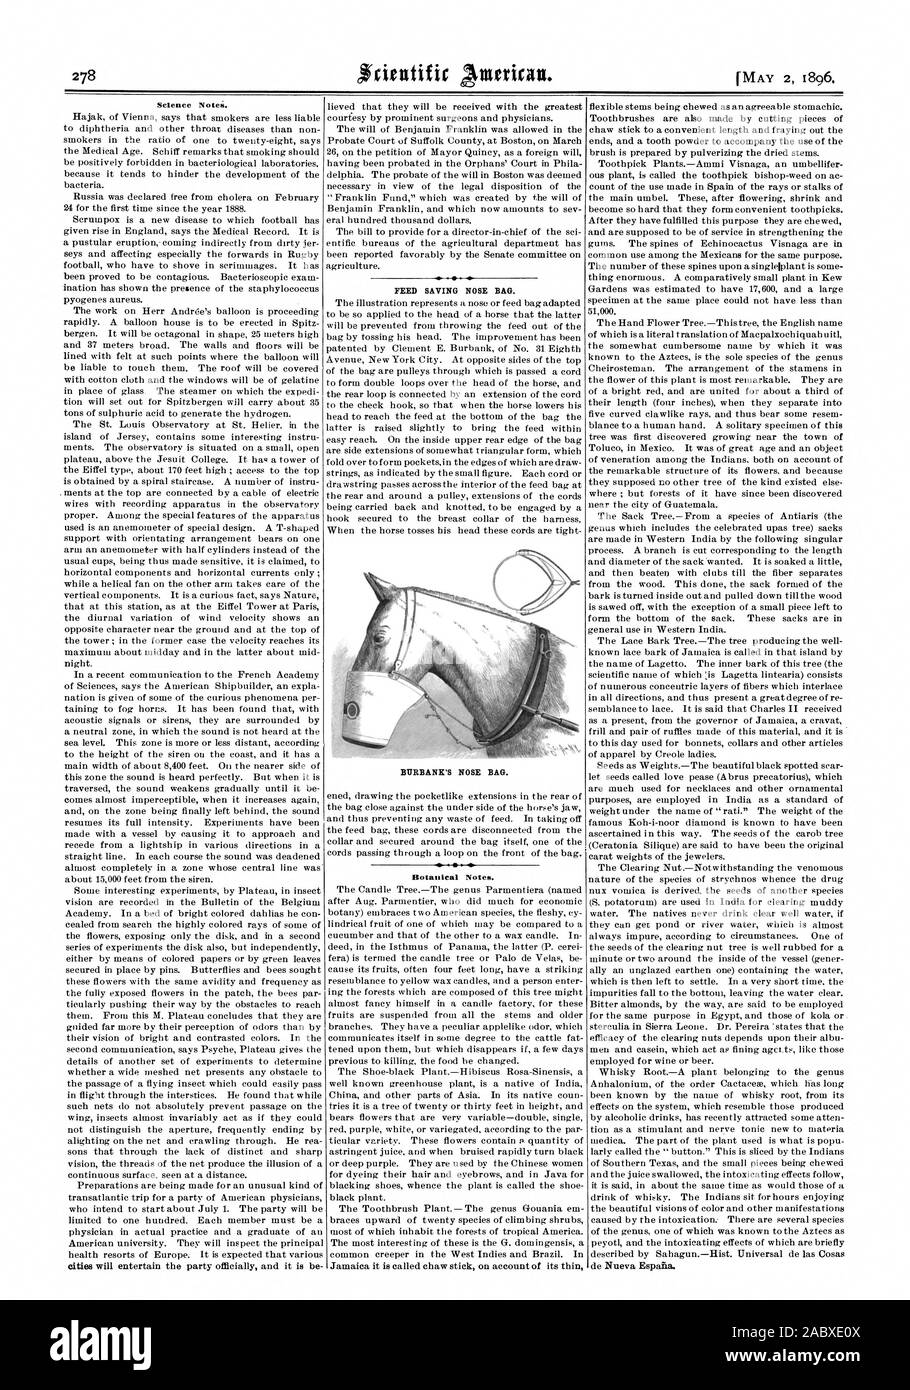 La scienza note. Risparmio di alimentazione naso in borsa. BURBANK del naso del sacchetto. Note botaniche., Scientific American, 1896-05-02 Foto Stock